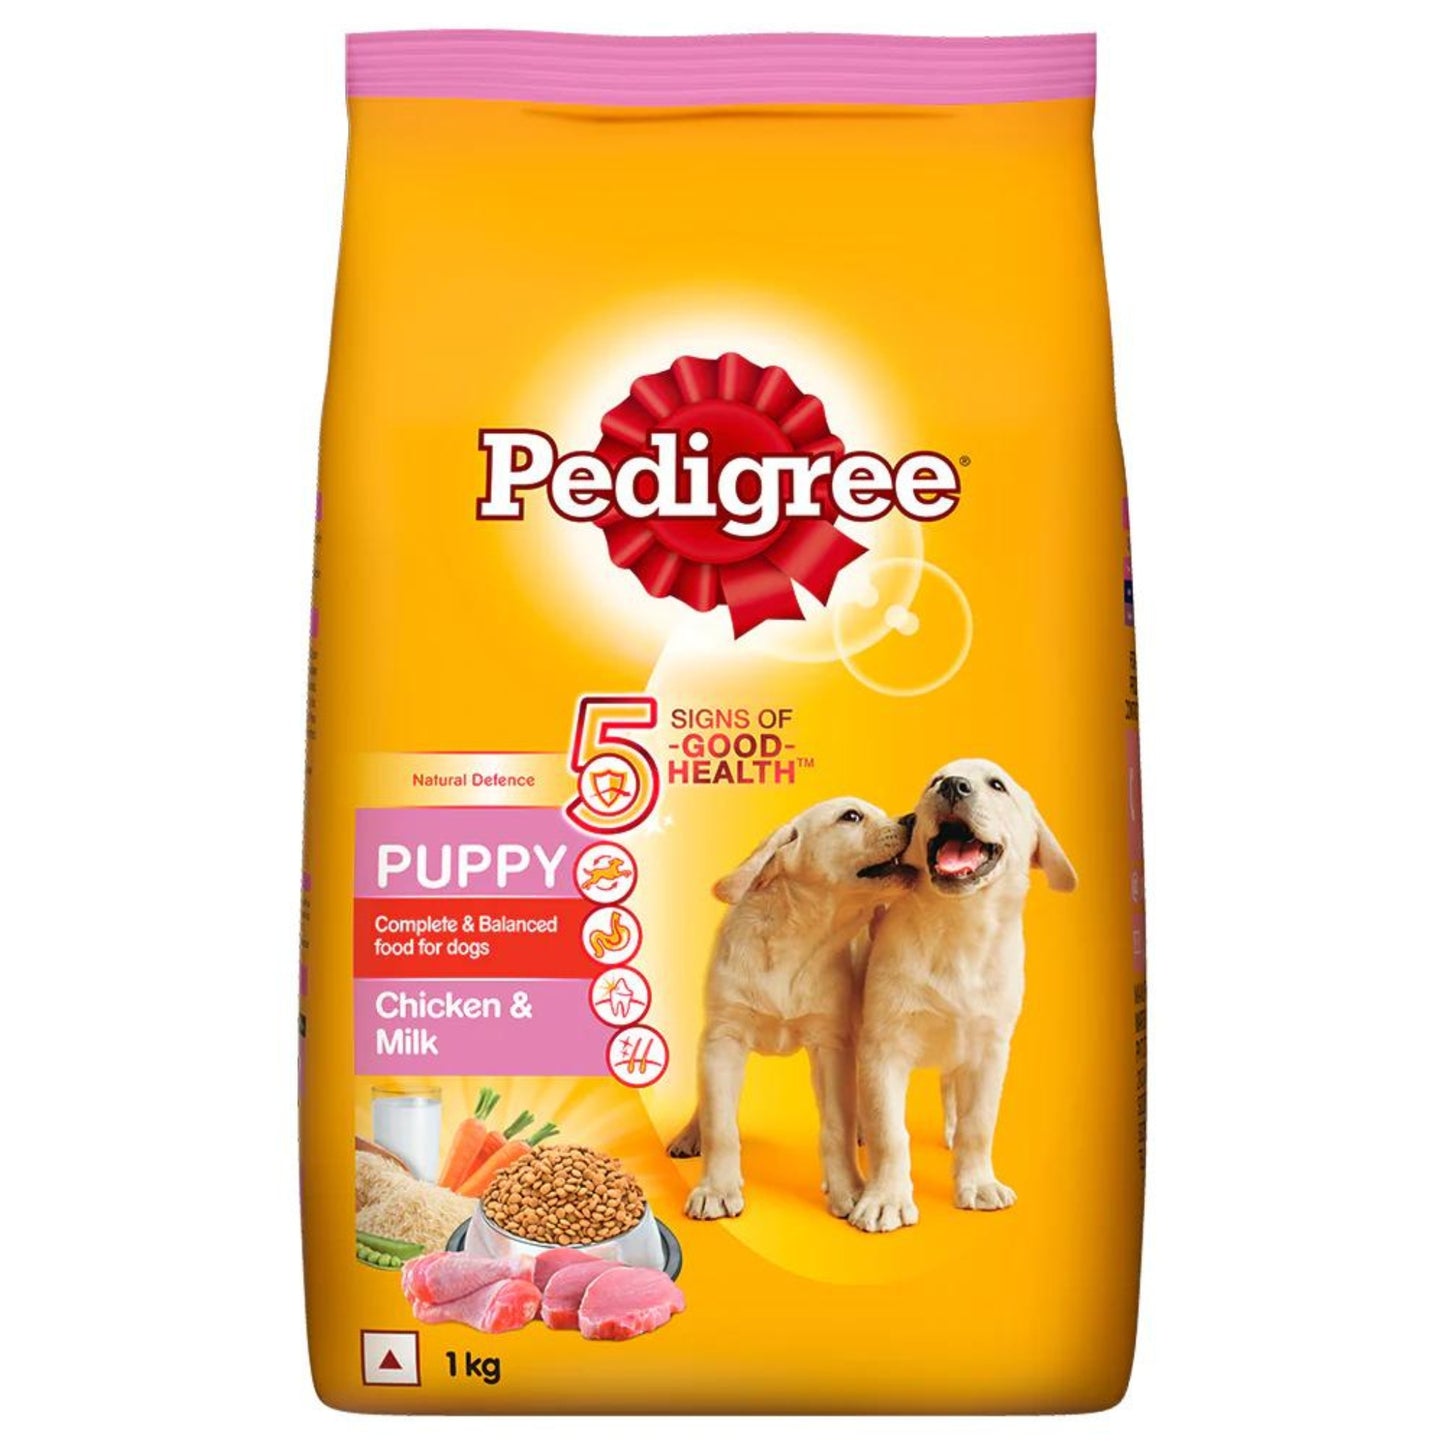 Pedigree Puppy Dry Dog Food - Chicken & Milk, 1Kg